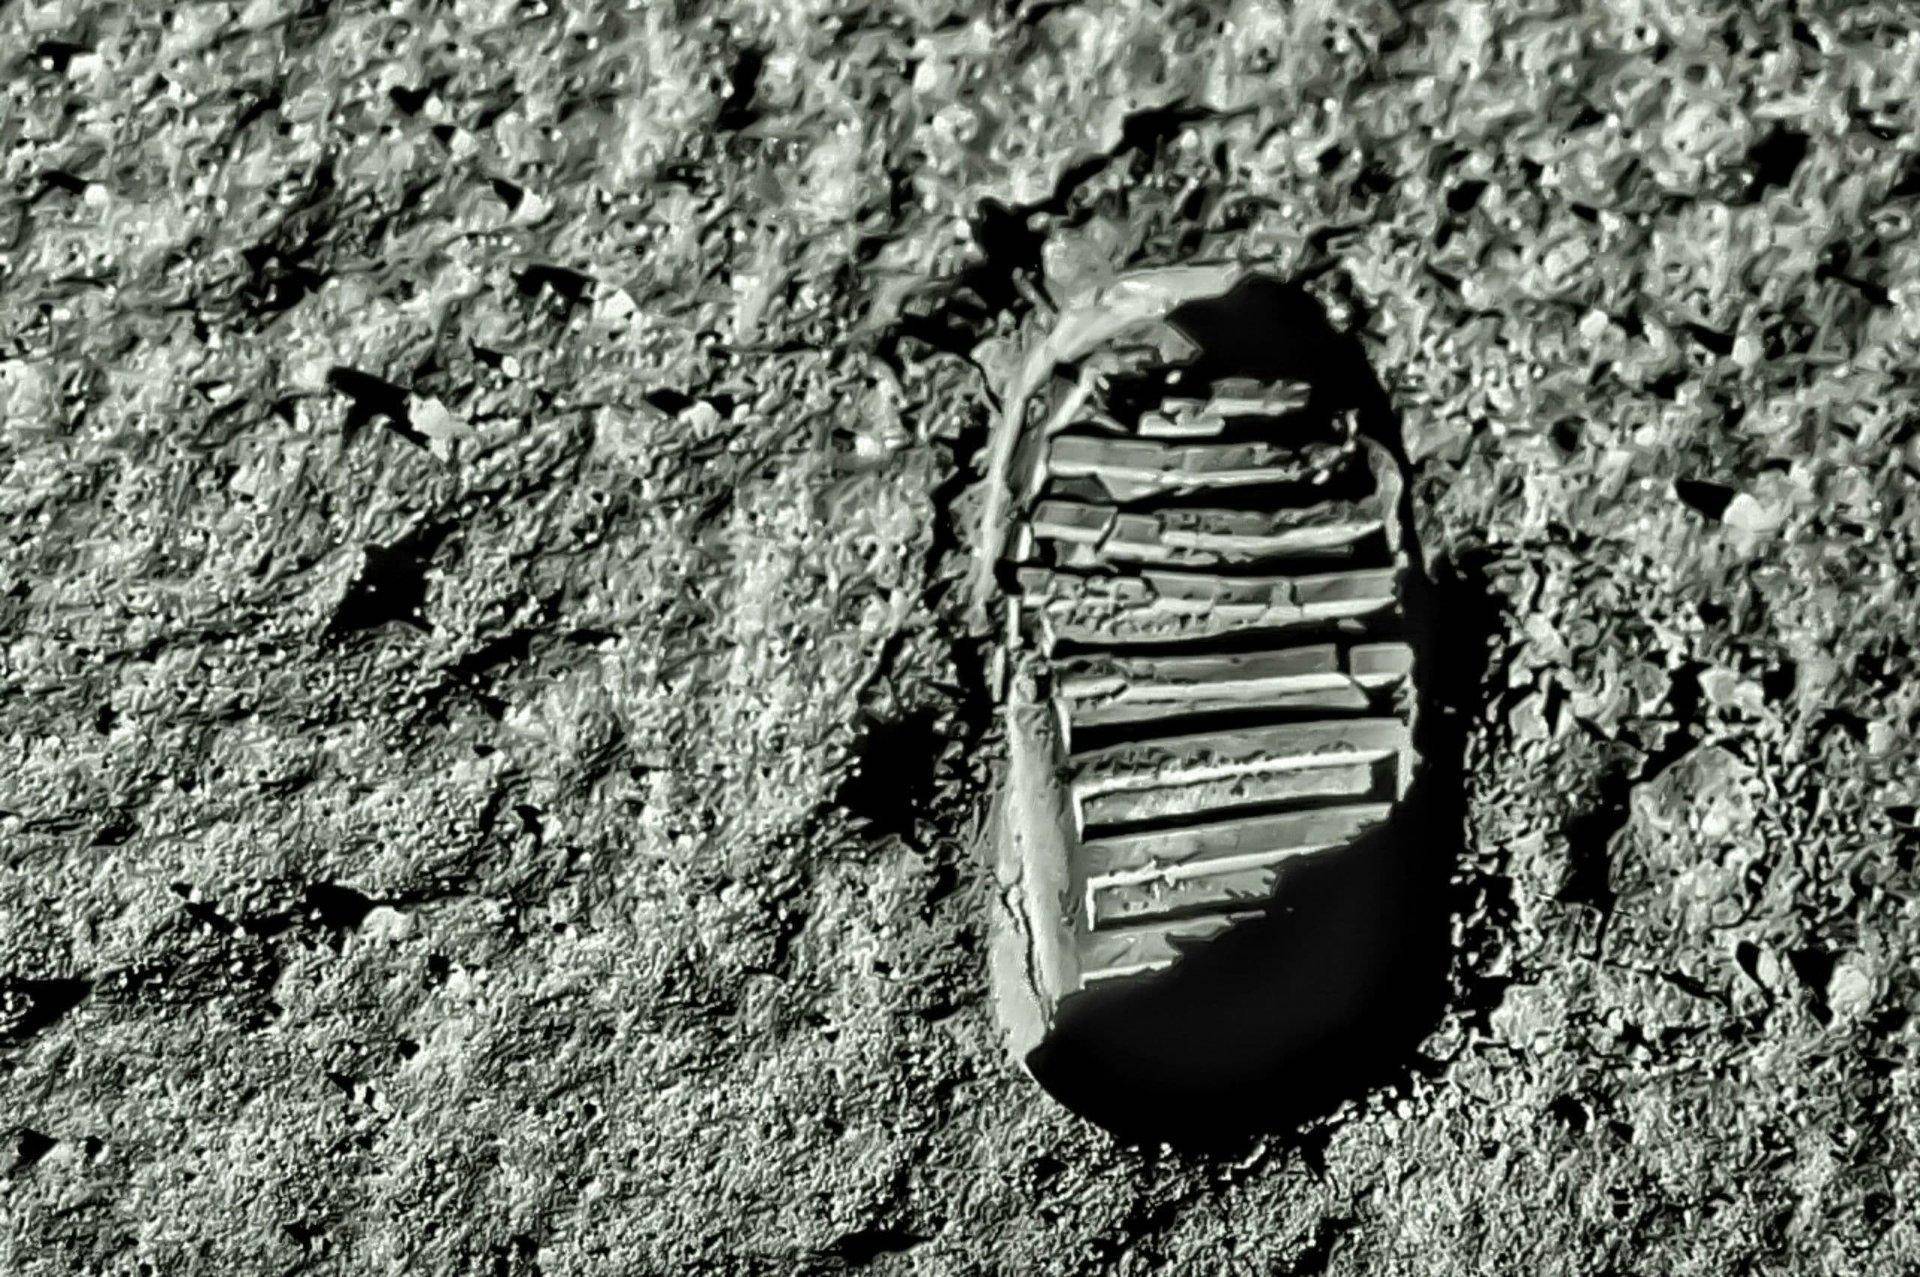 Следы луны 16 глава. След Базза Олдрина на Луне. Аполлон-11 следы подошв на Луне.